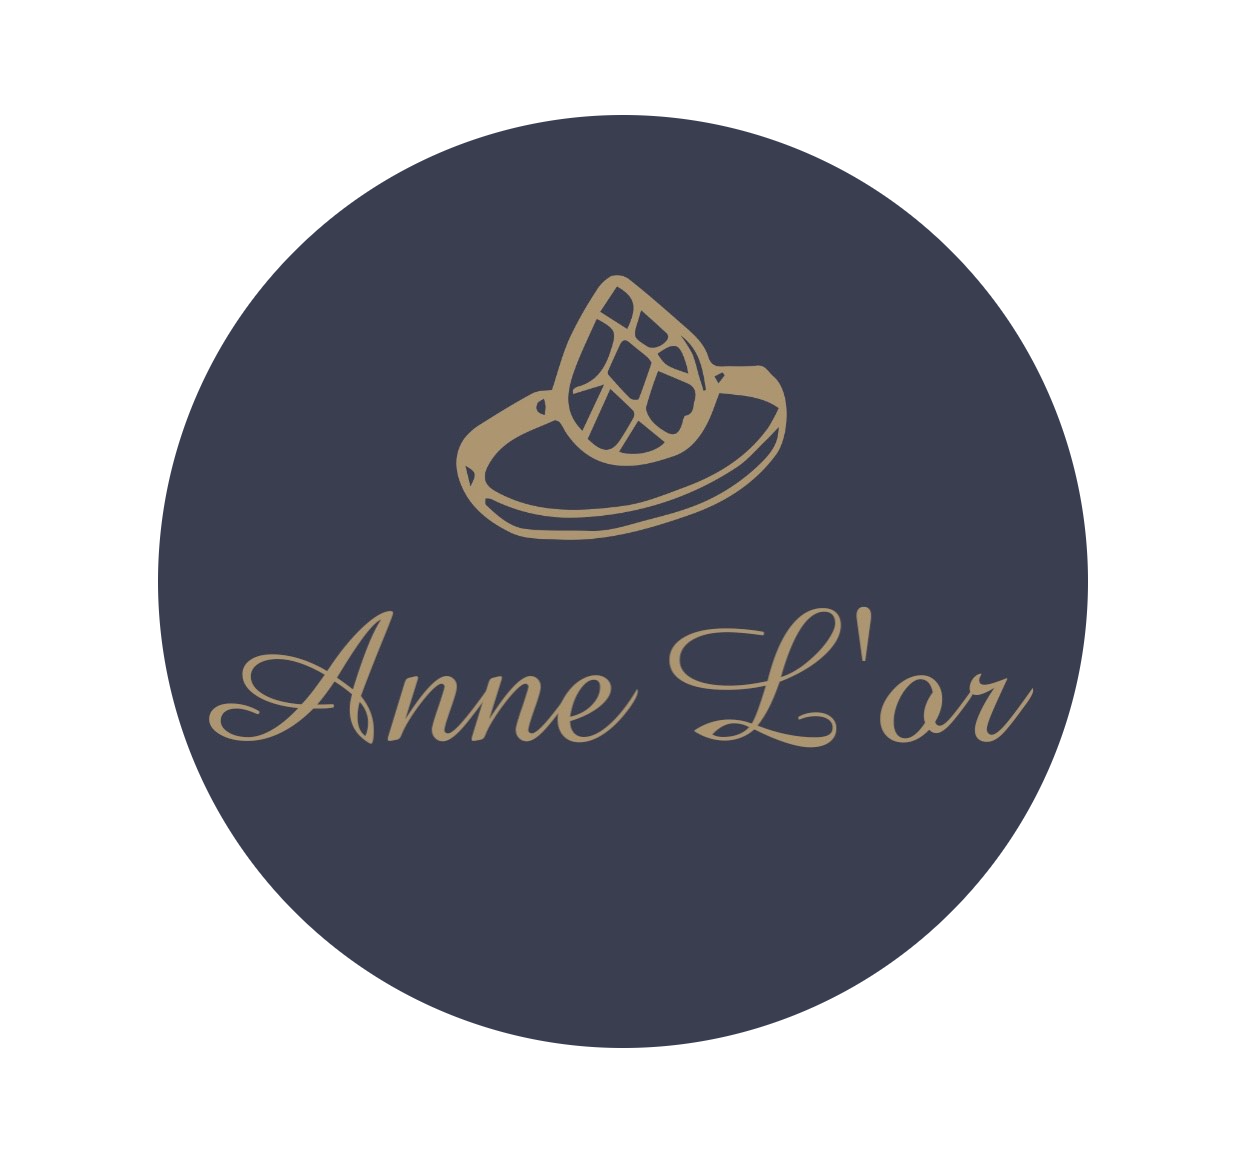 Anne L'or